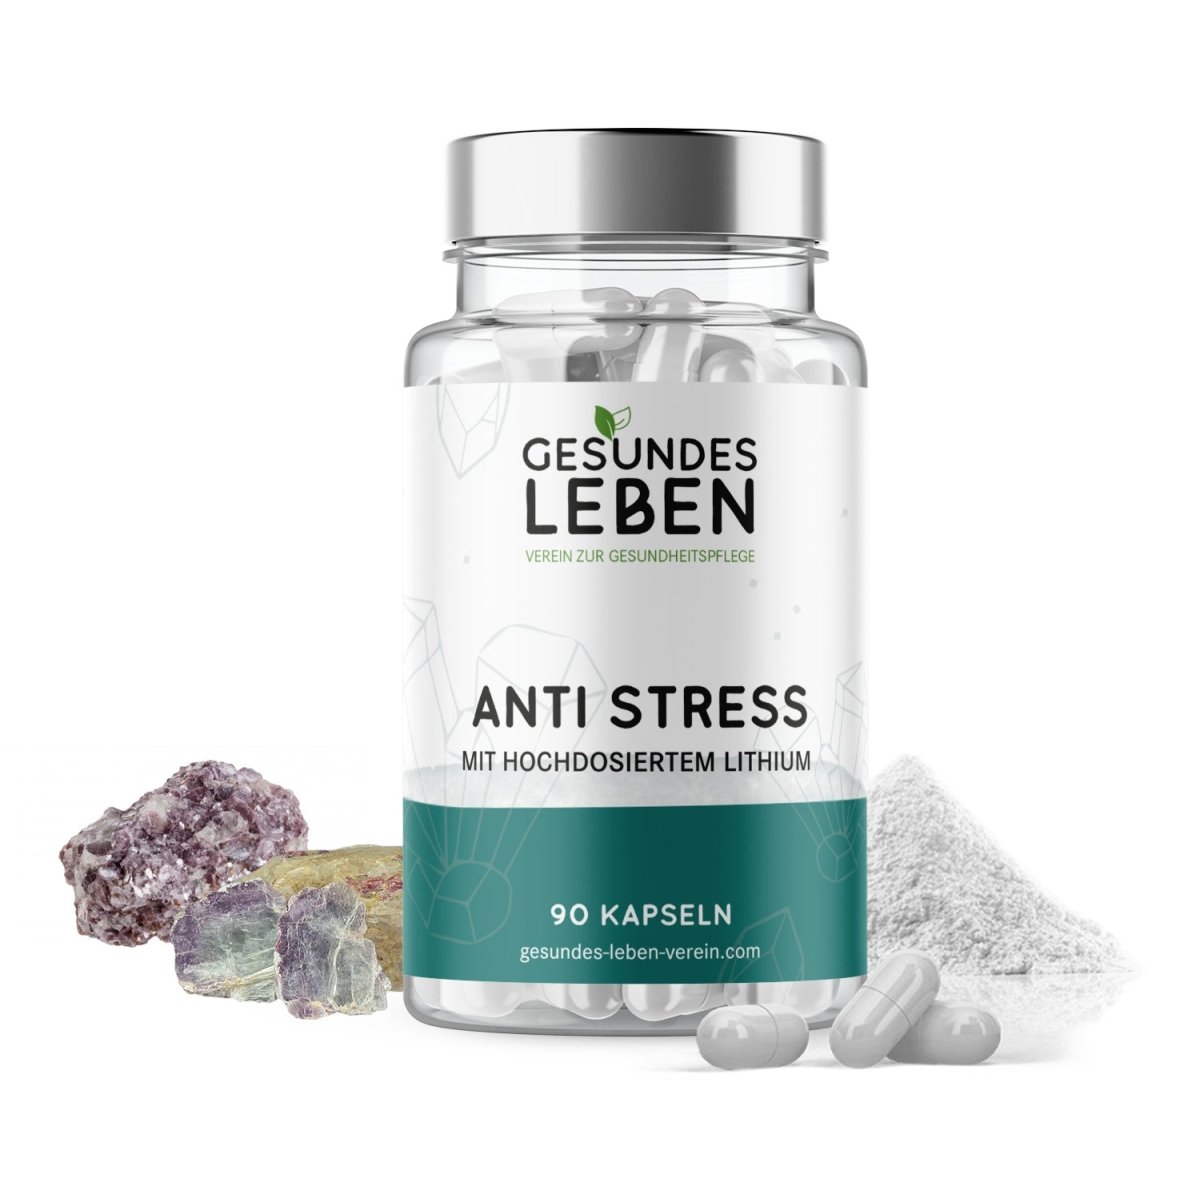 Gesundes Leben - Anti Stress - 90 Kapseln - HS Activa